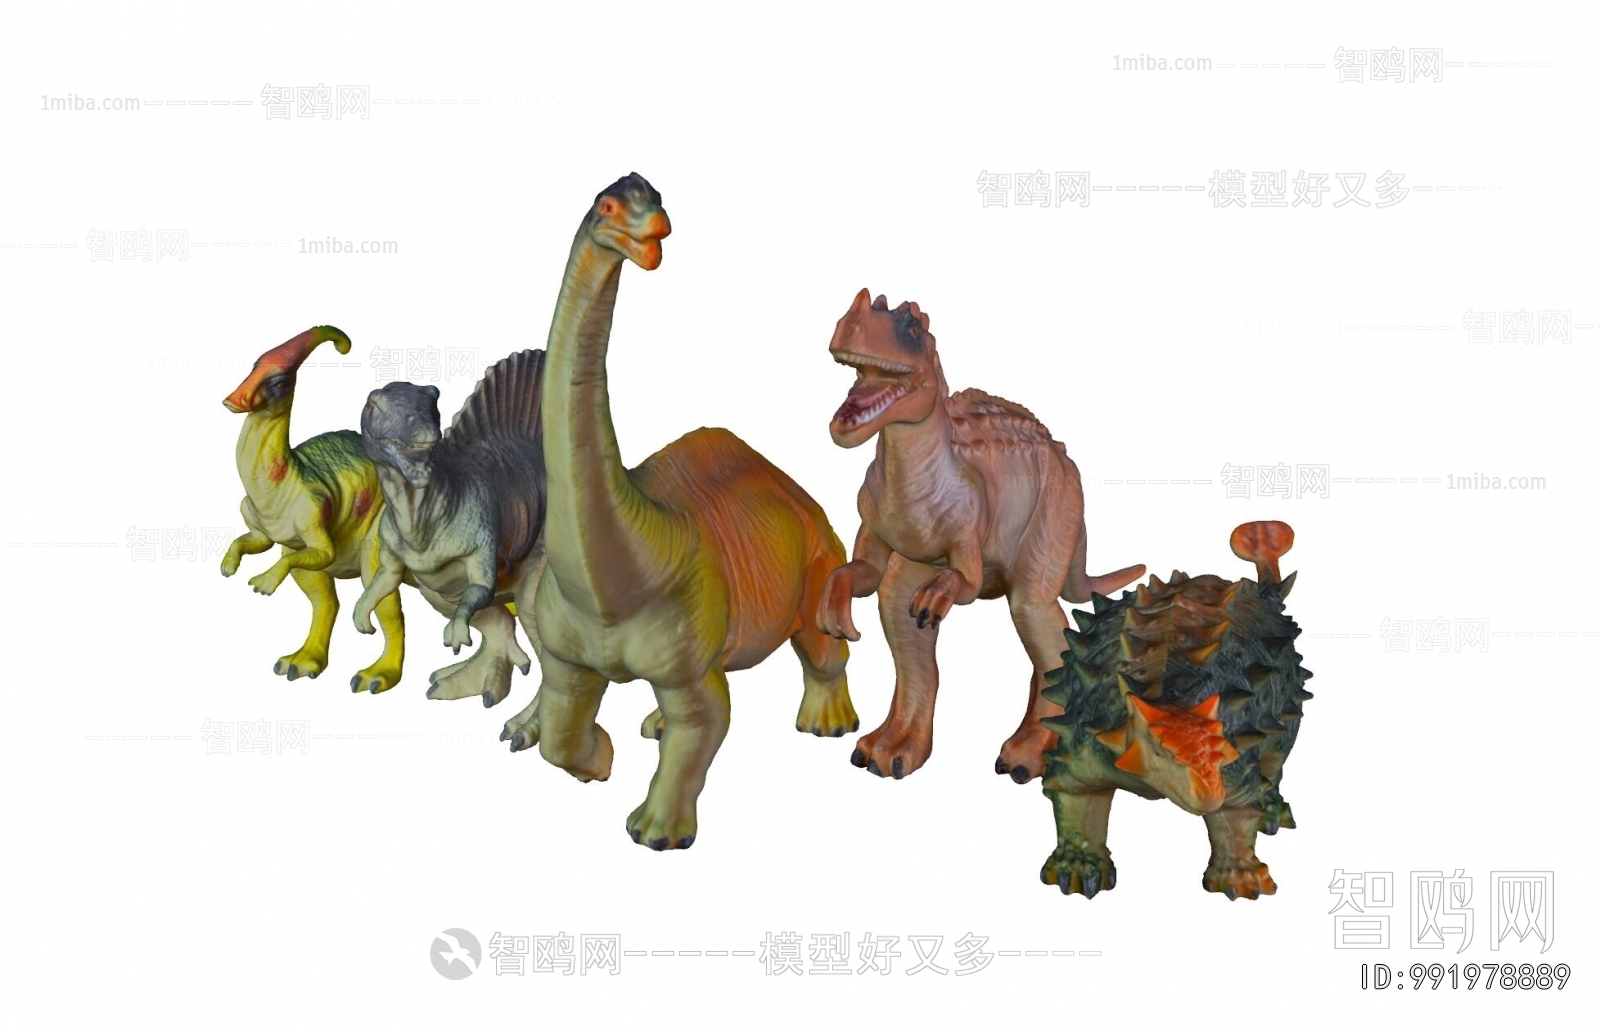 现代恐龙玩具 动物3D模型下载